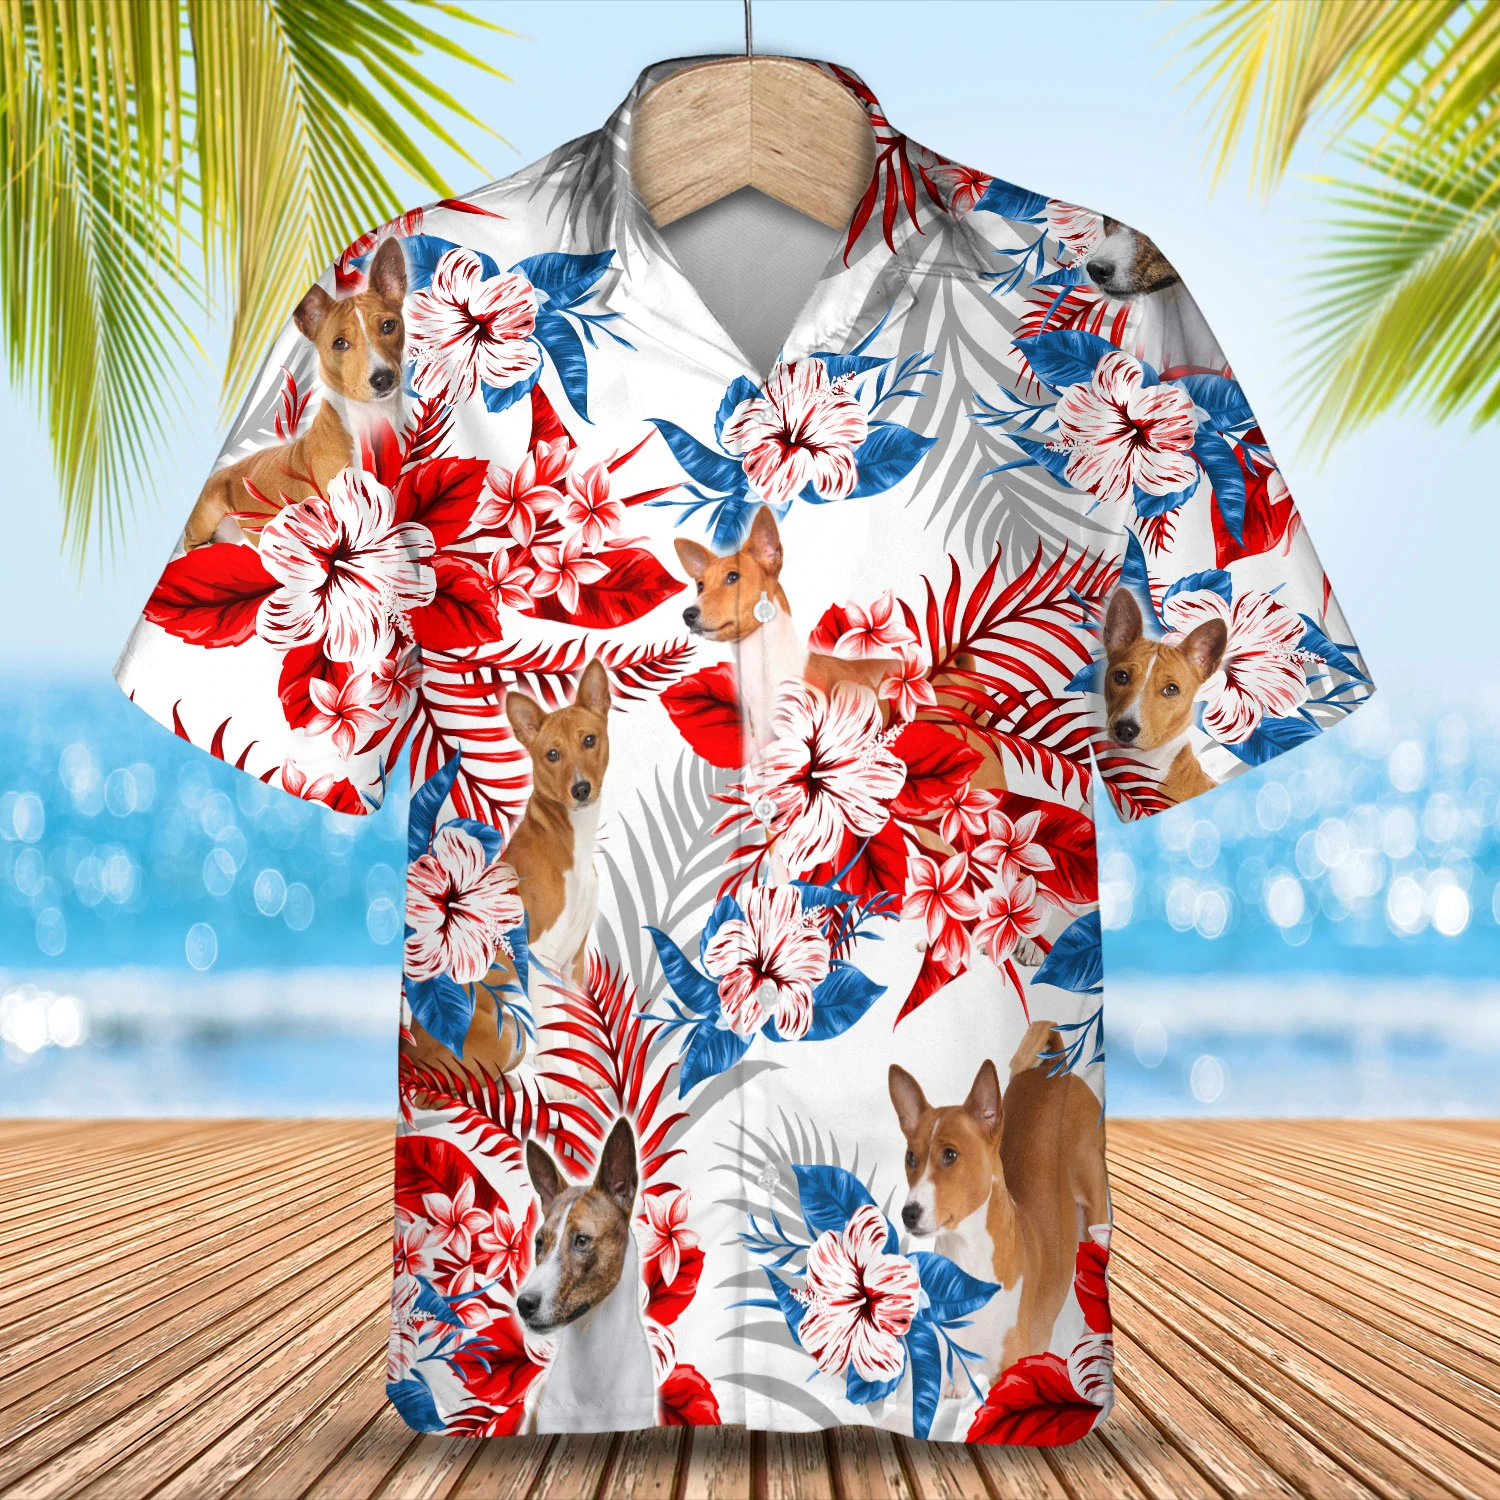 Basenji Hawaiian Shirt -  Gift for Summer/ Summer aloha shirt/ Hawaiian shirt for Men and women